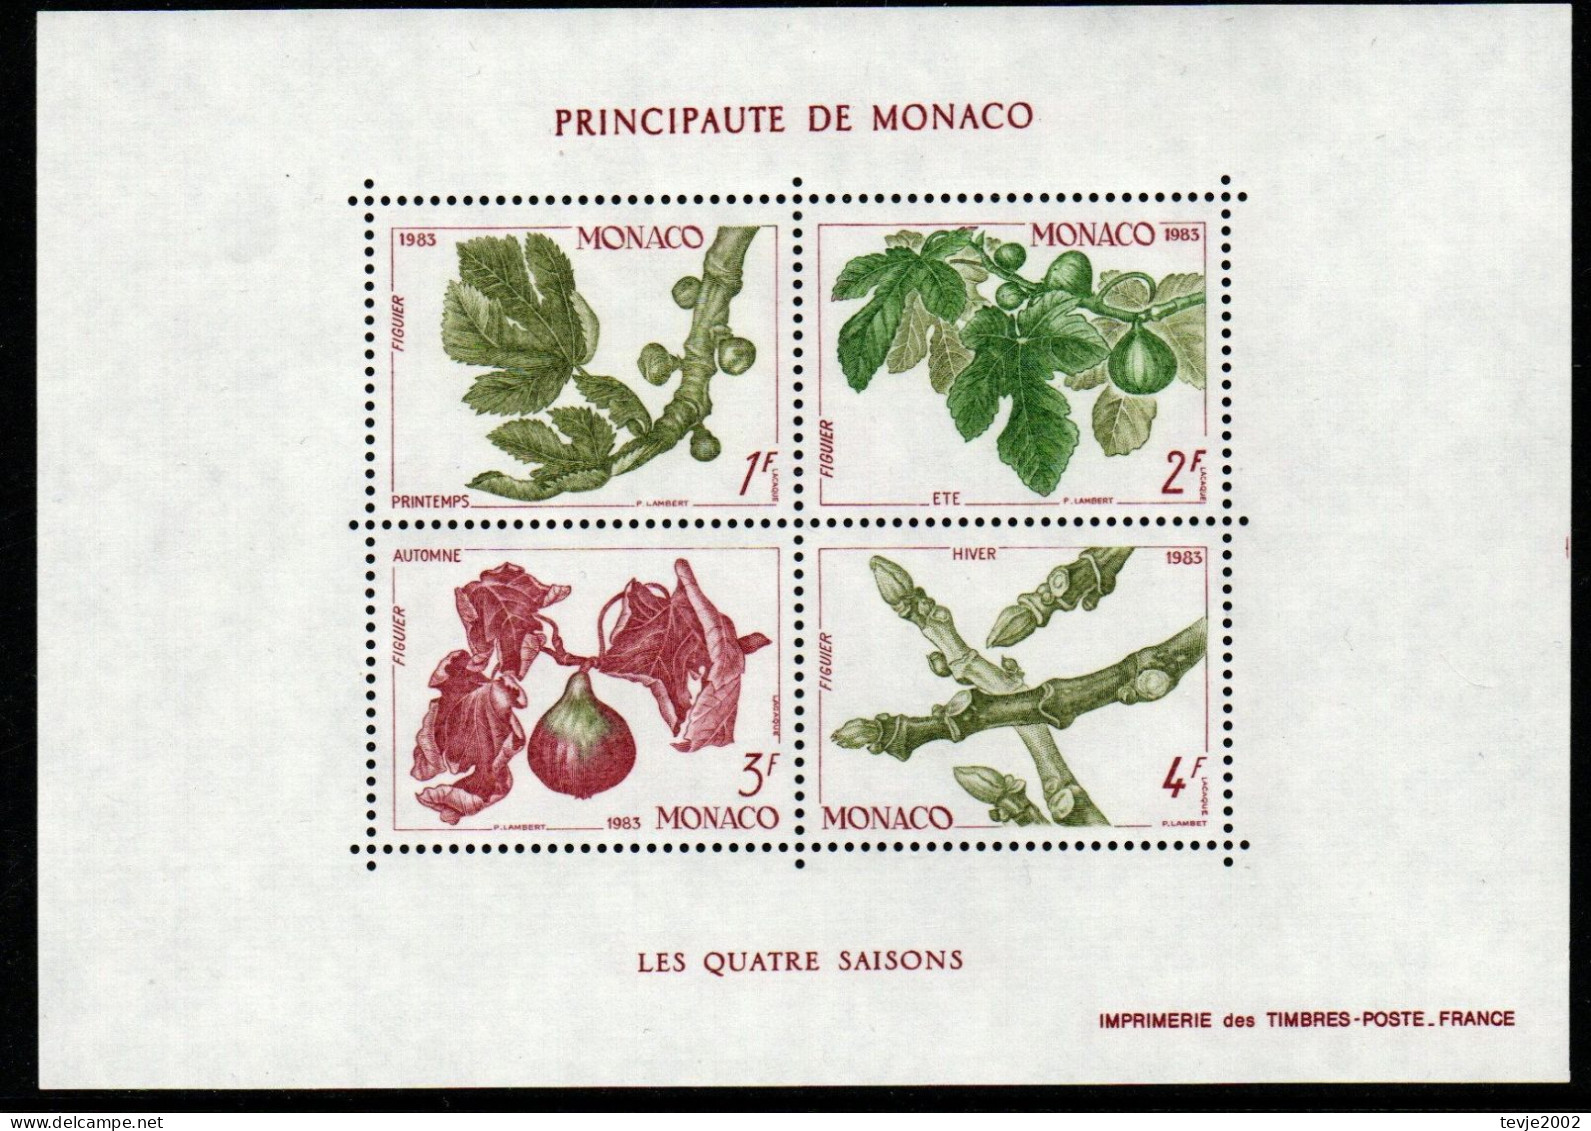 Monaco 1983 - Mi.Nr. Block 24 - Postfrisch MNH - Bäume Trees Feigen Früchte Fruits - Alberi